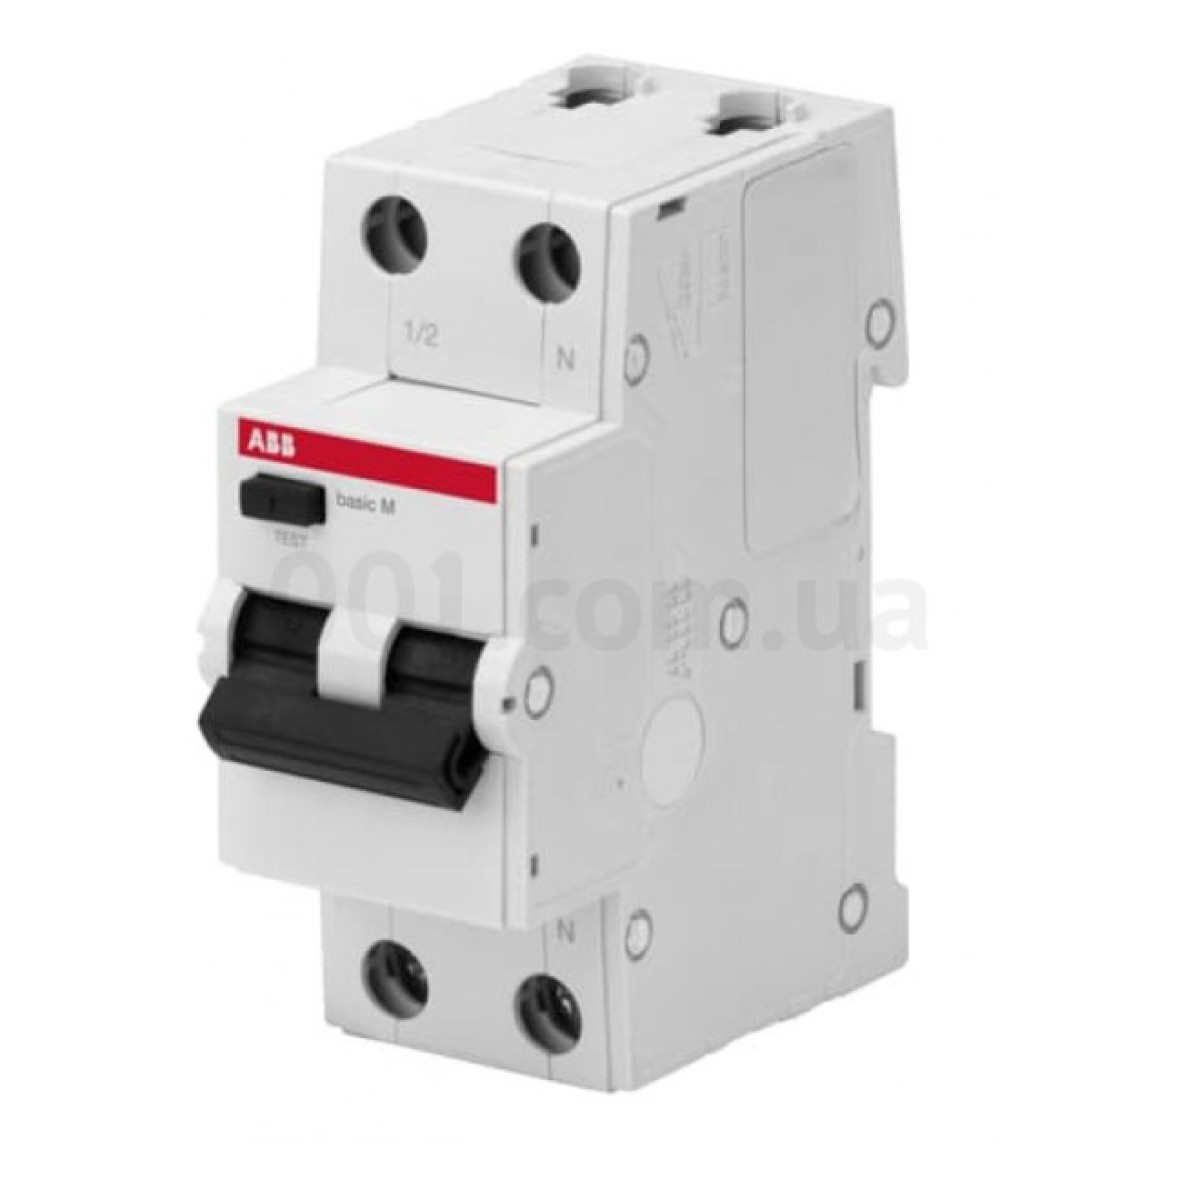 Автоматичний вимикач диференційного струму BMR415C25 1P+N/25А/30мА тип AC BASIC M, ABB 256_256.jpg